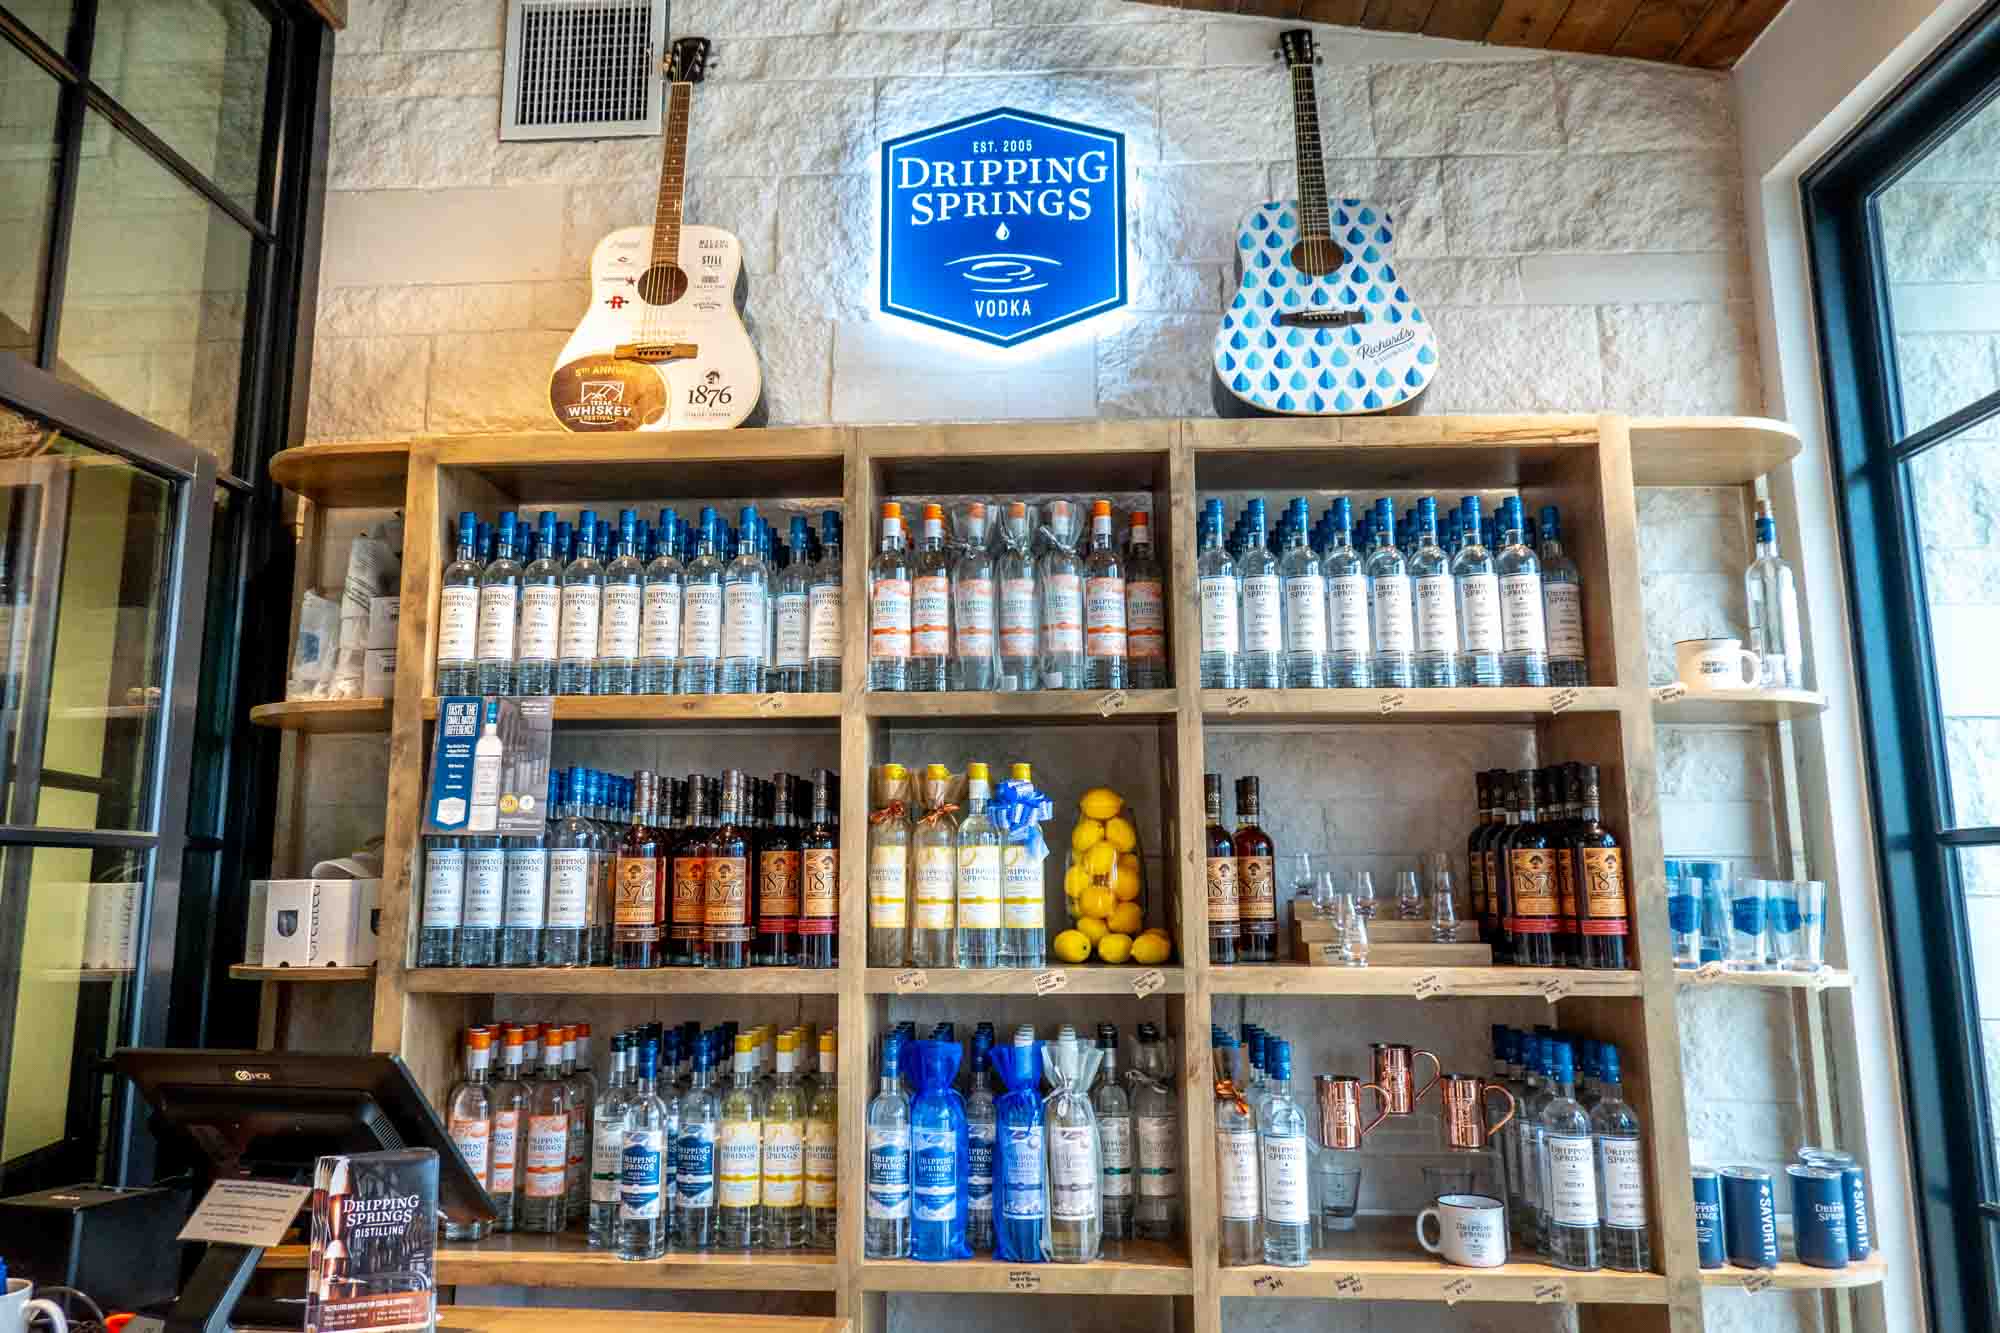 Liquor bottles on shelves under a sign for "Dripping Springs Vodka."